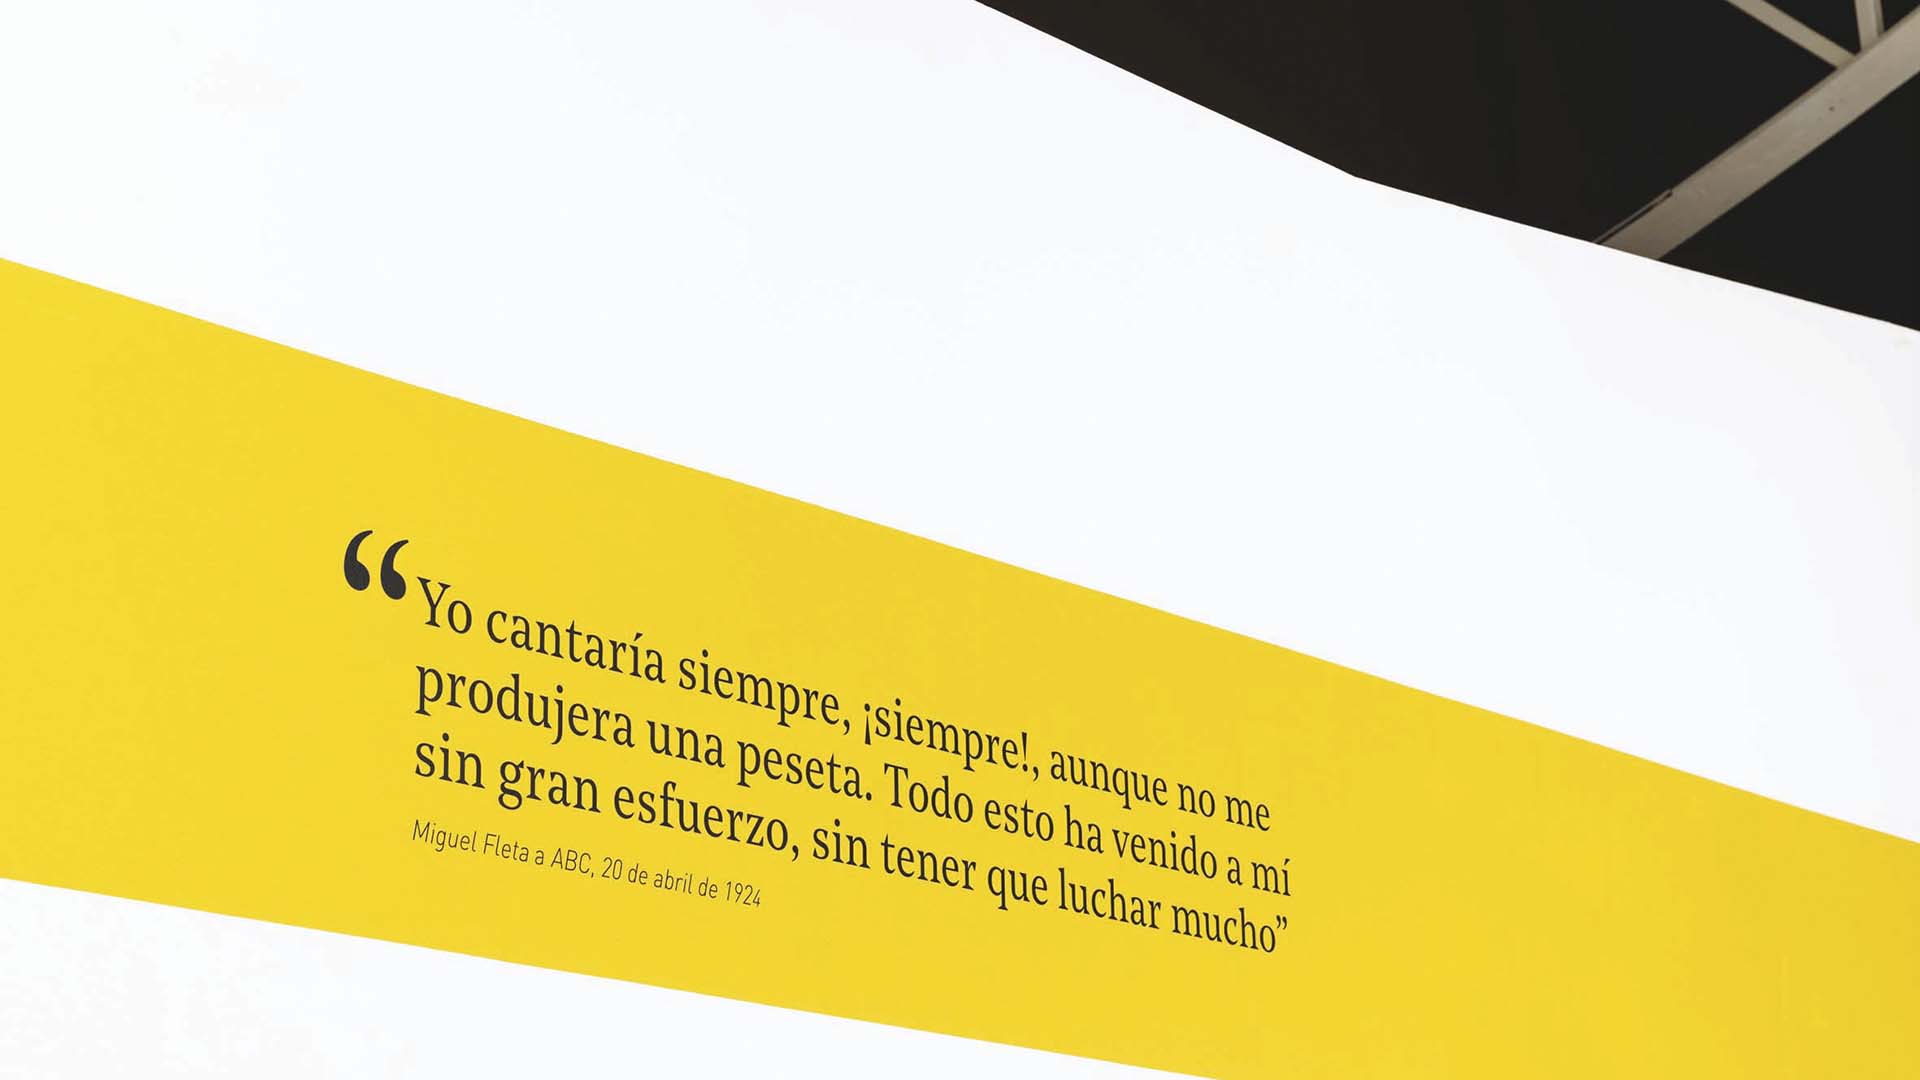 Diseño gráfico y expositivo para exposición El hombre y el mito, sobre el tenor aragonés Miguel Fleta. IAACC Pablo Serrano de Zaragoza.